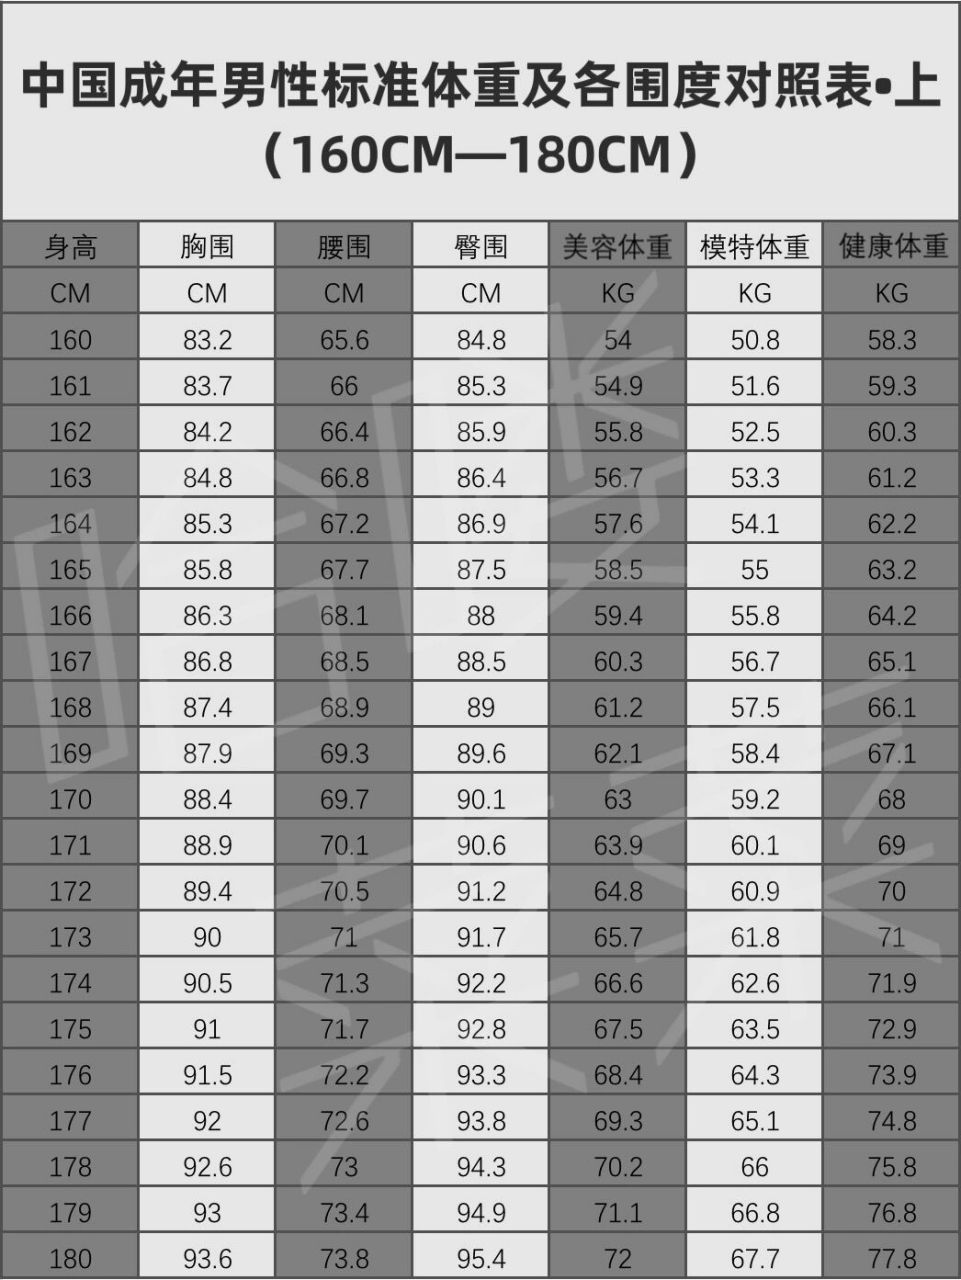 中国成年男性标准体重及各围度对照表(上) 应部分男性薯友的要求,来发